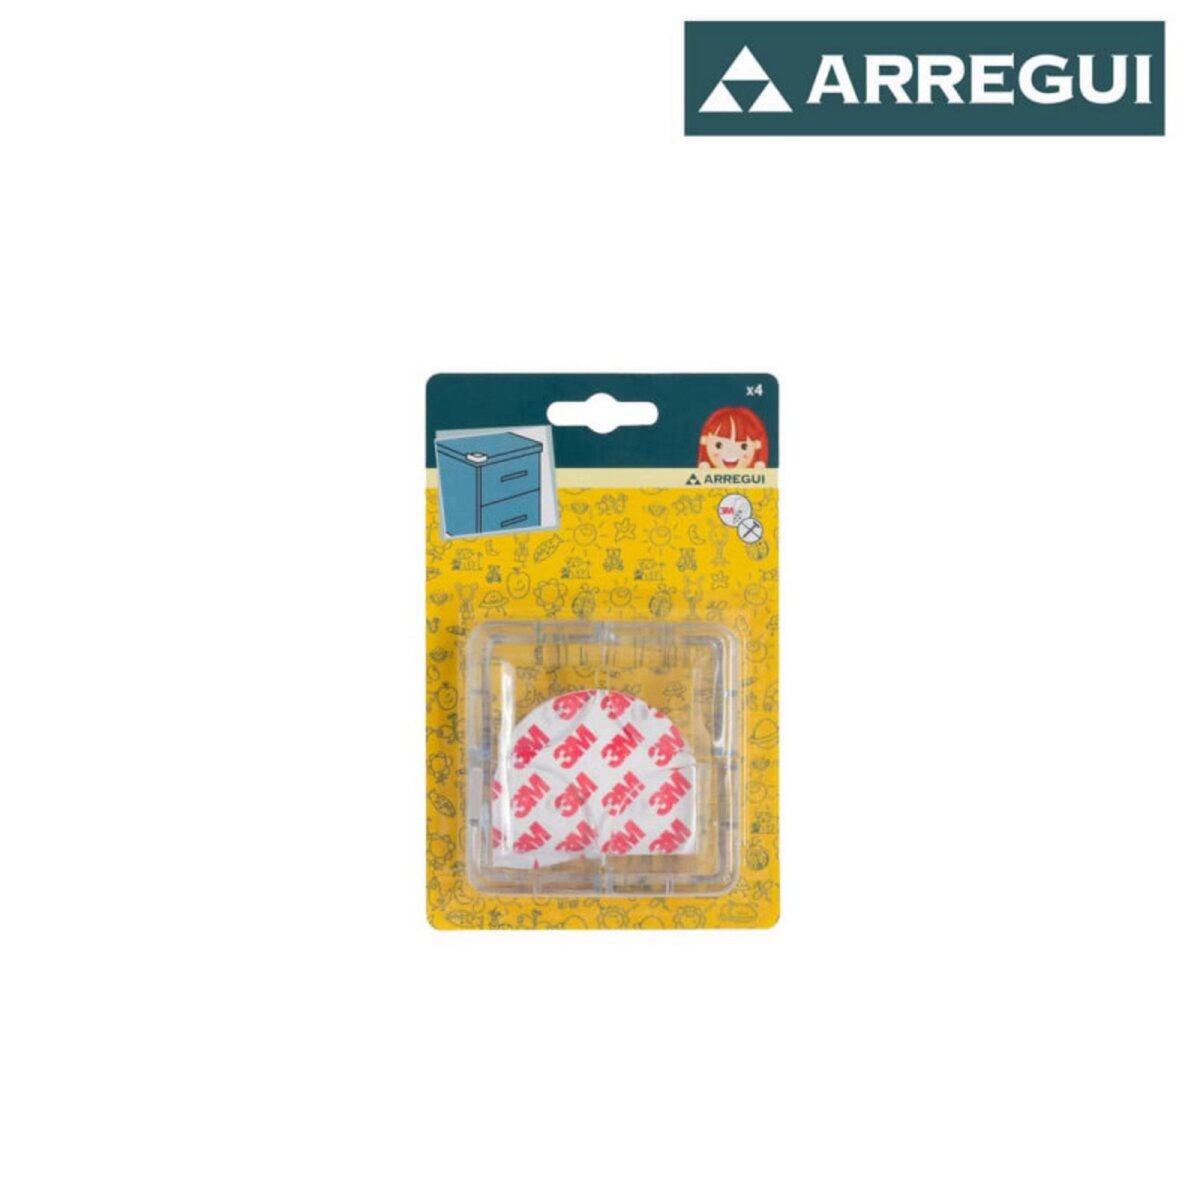 Protection d'angles ARREGUI - A-1044030 - Transparent - 4 coins pas cher 